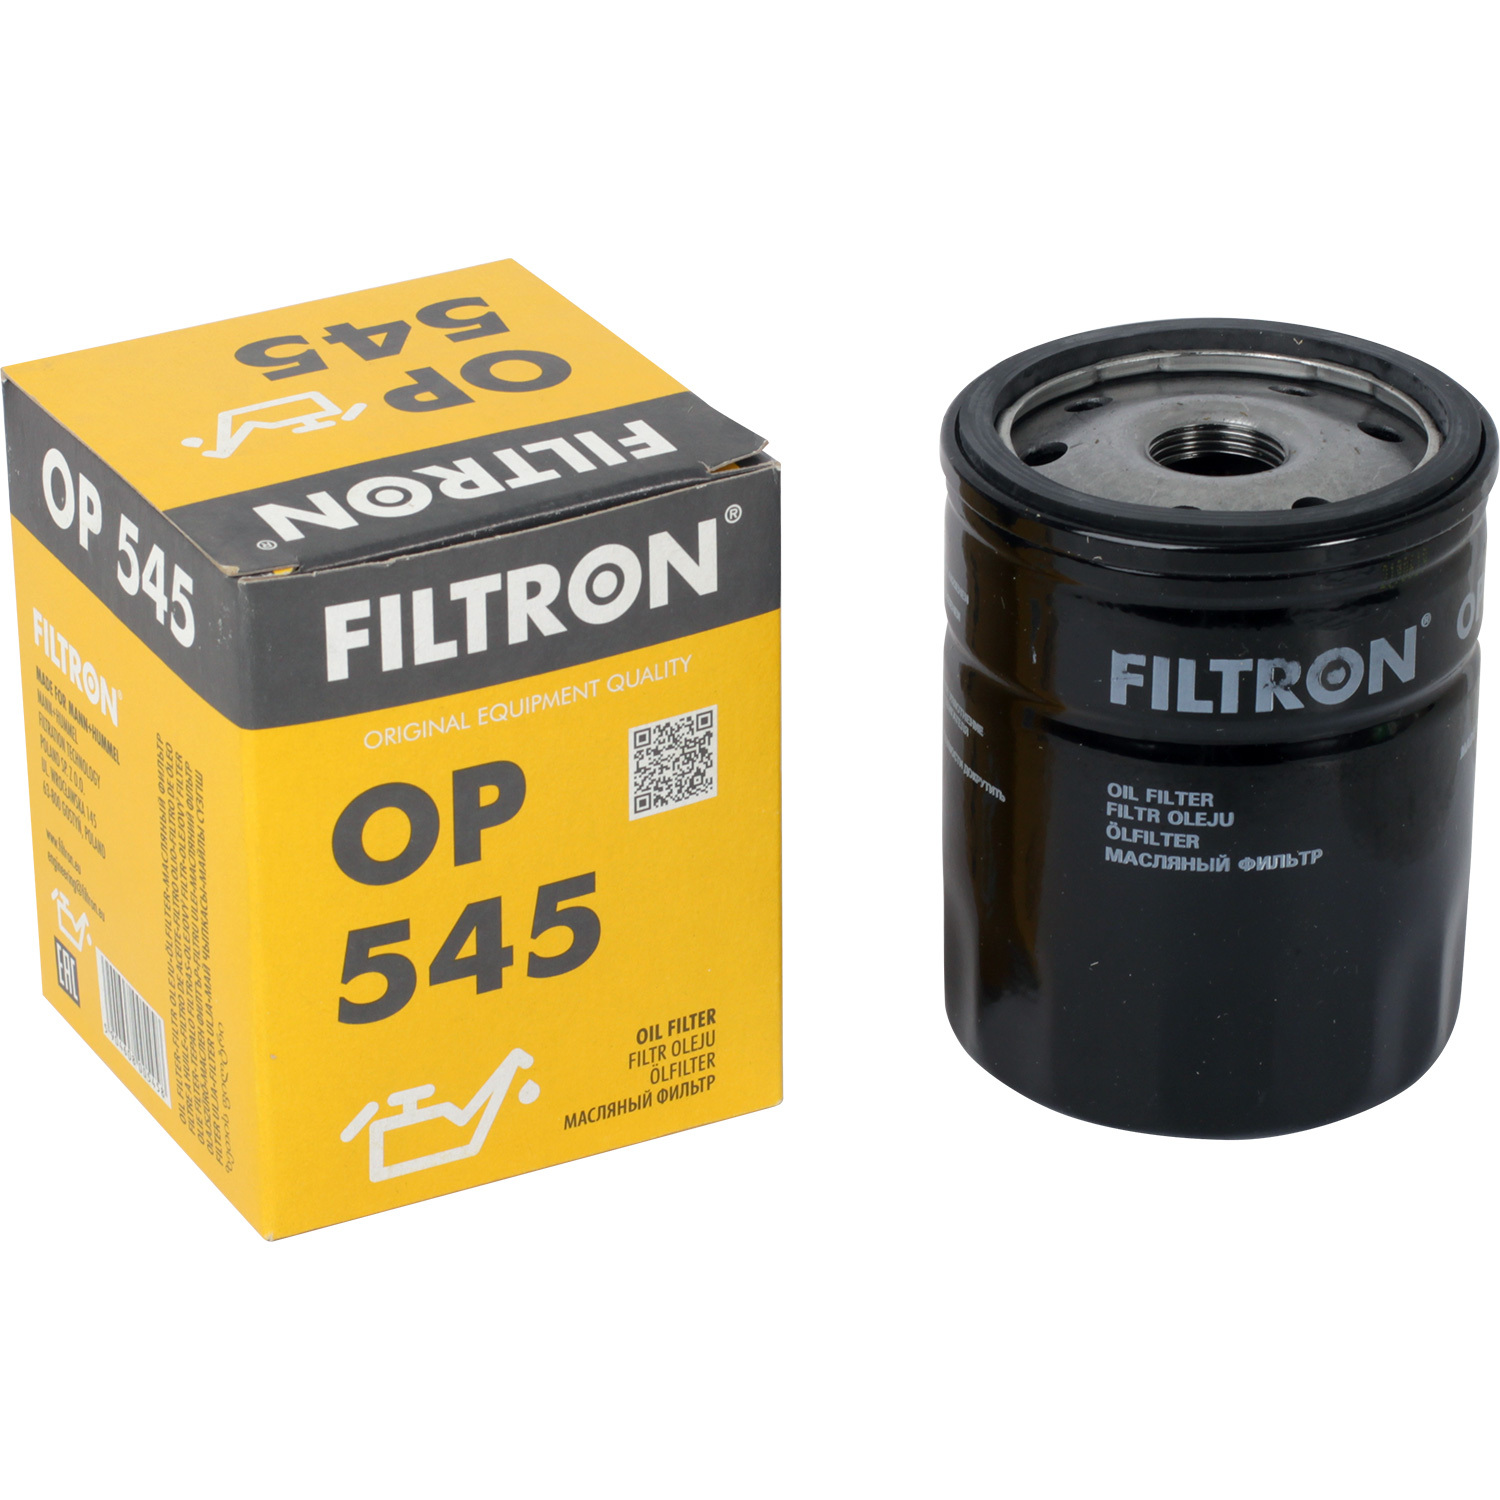 Фильтры Filtron Фильтр масляный Filtron OP545